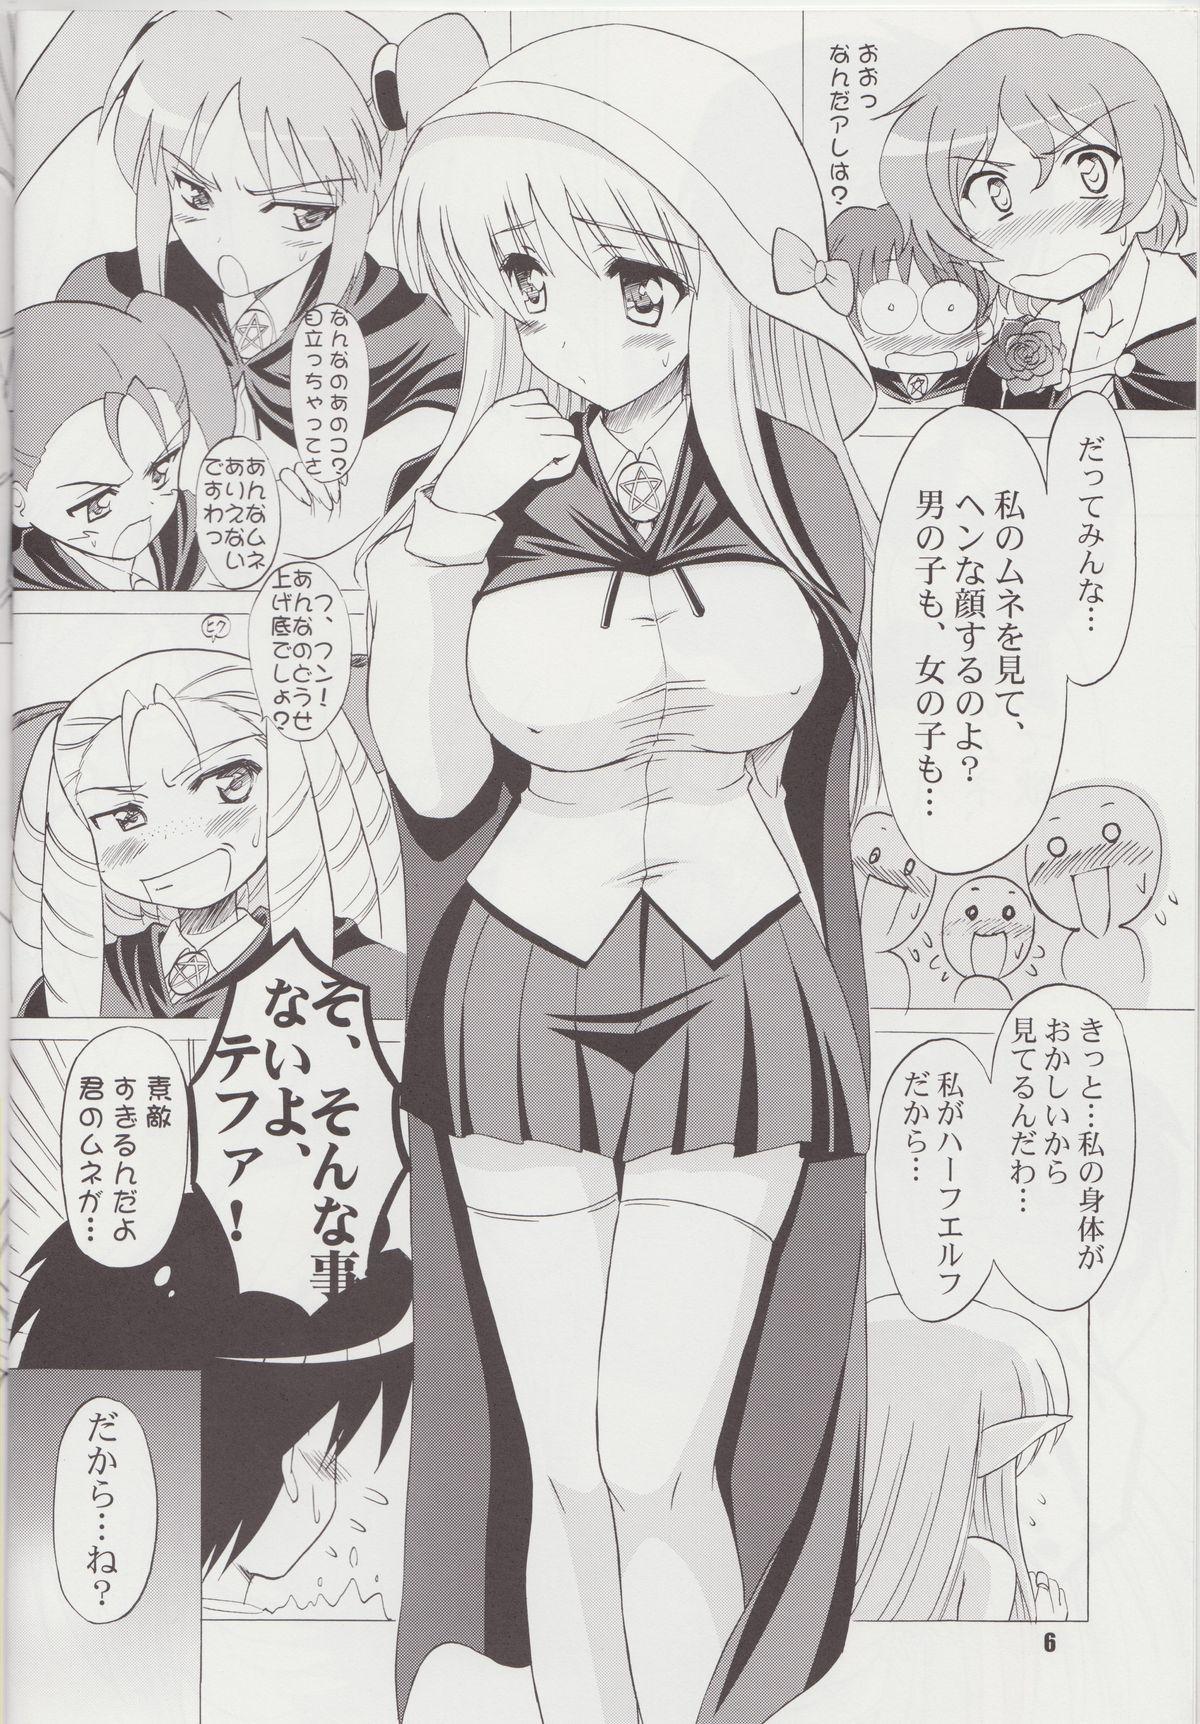 Petite Girl Porn Bust Revolution! - Zero no tsukaima Hardon - Page 5